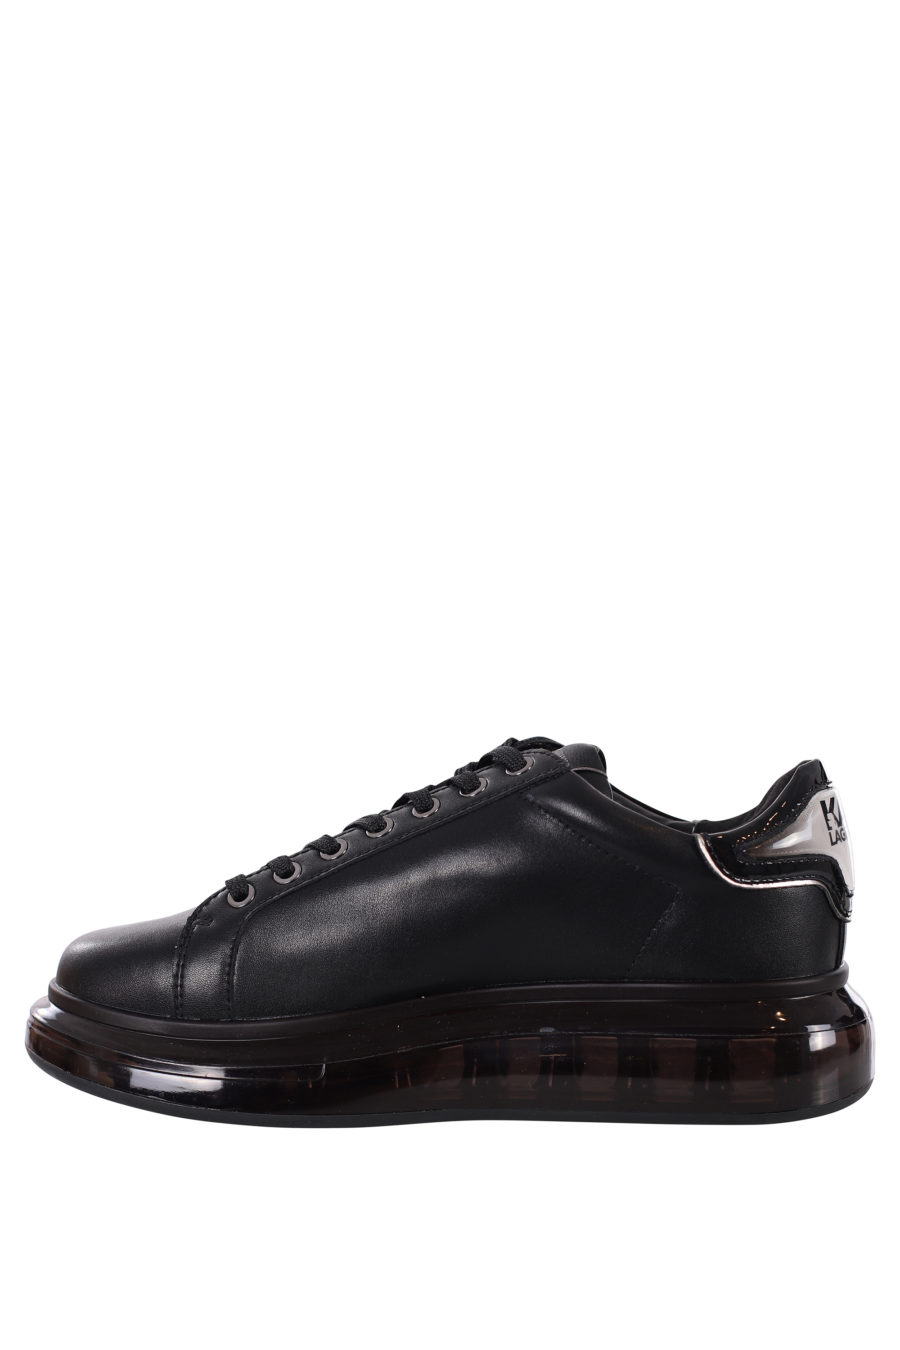 Zapatillas negras con logo silueta negro y suela negra - IMG 0418